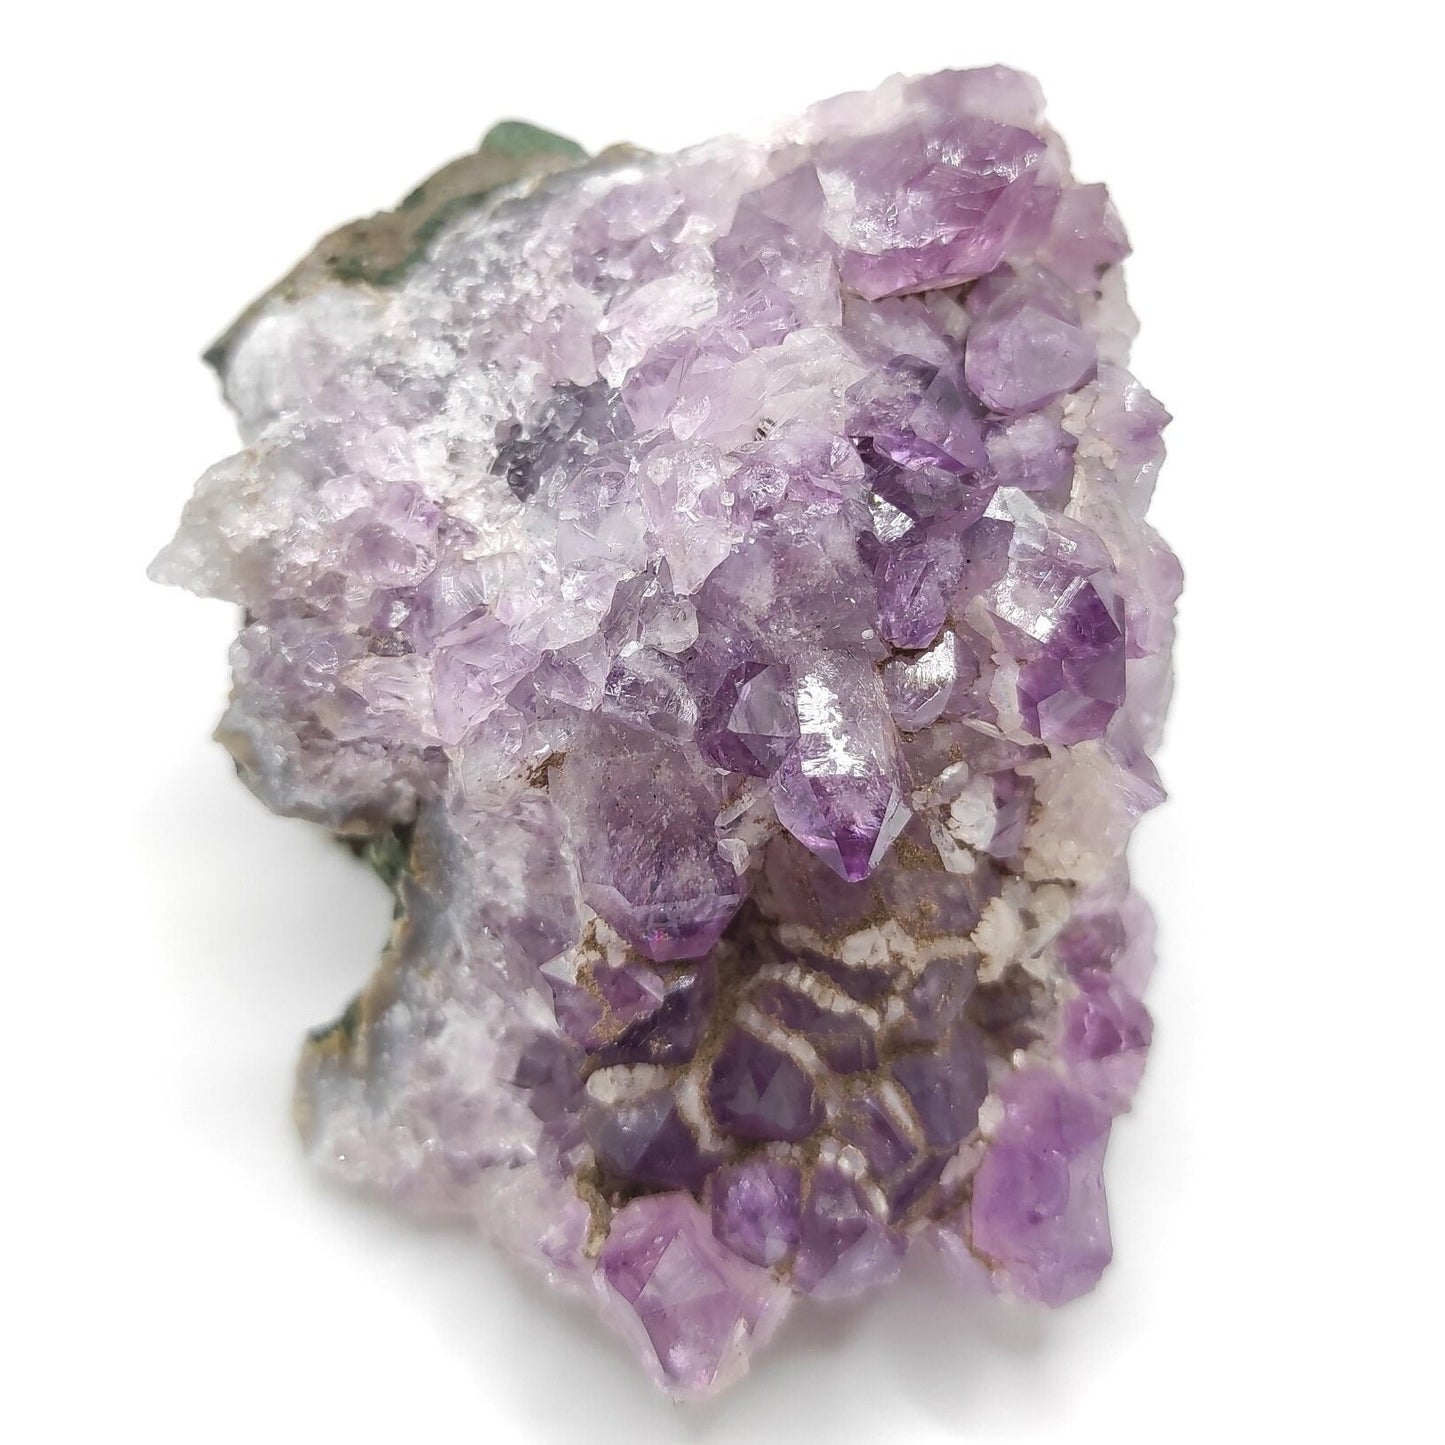 242g Amethyst Crystal Cluster Purple Amethyst from South Brazil Amethyst Gemstone Raw Amethyst Rough Amethyst Desk Crystal Natural Crystals